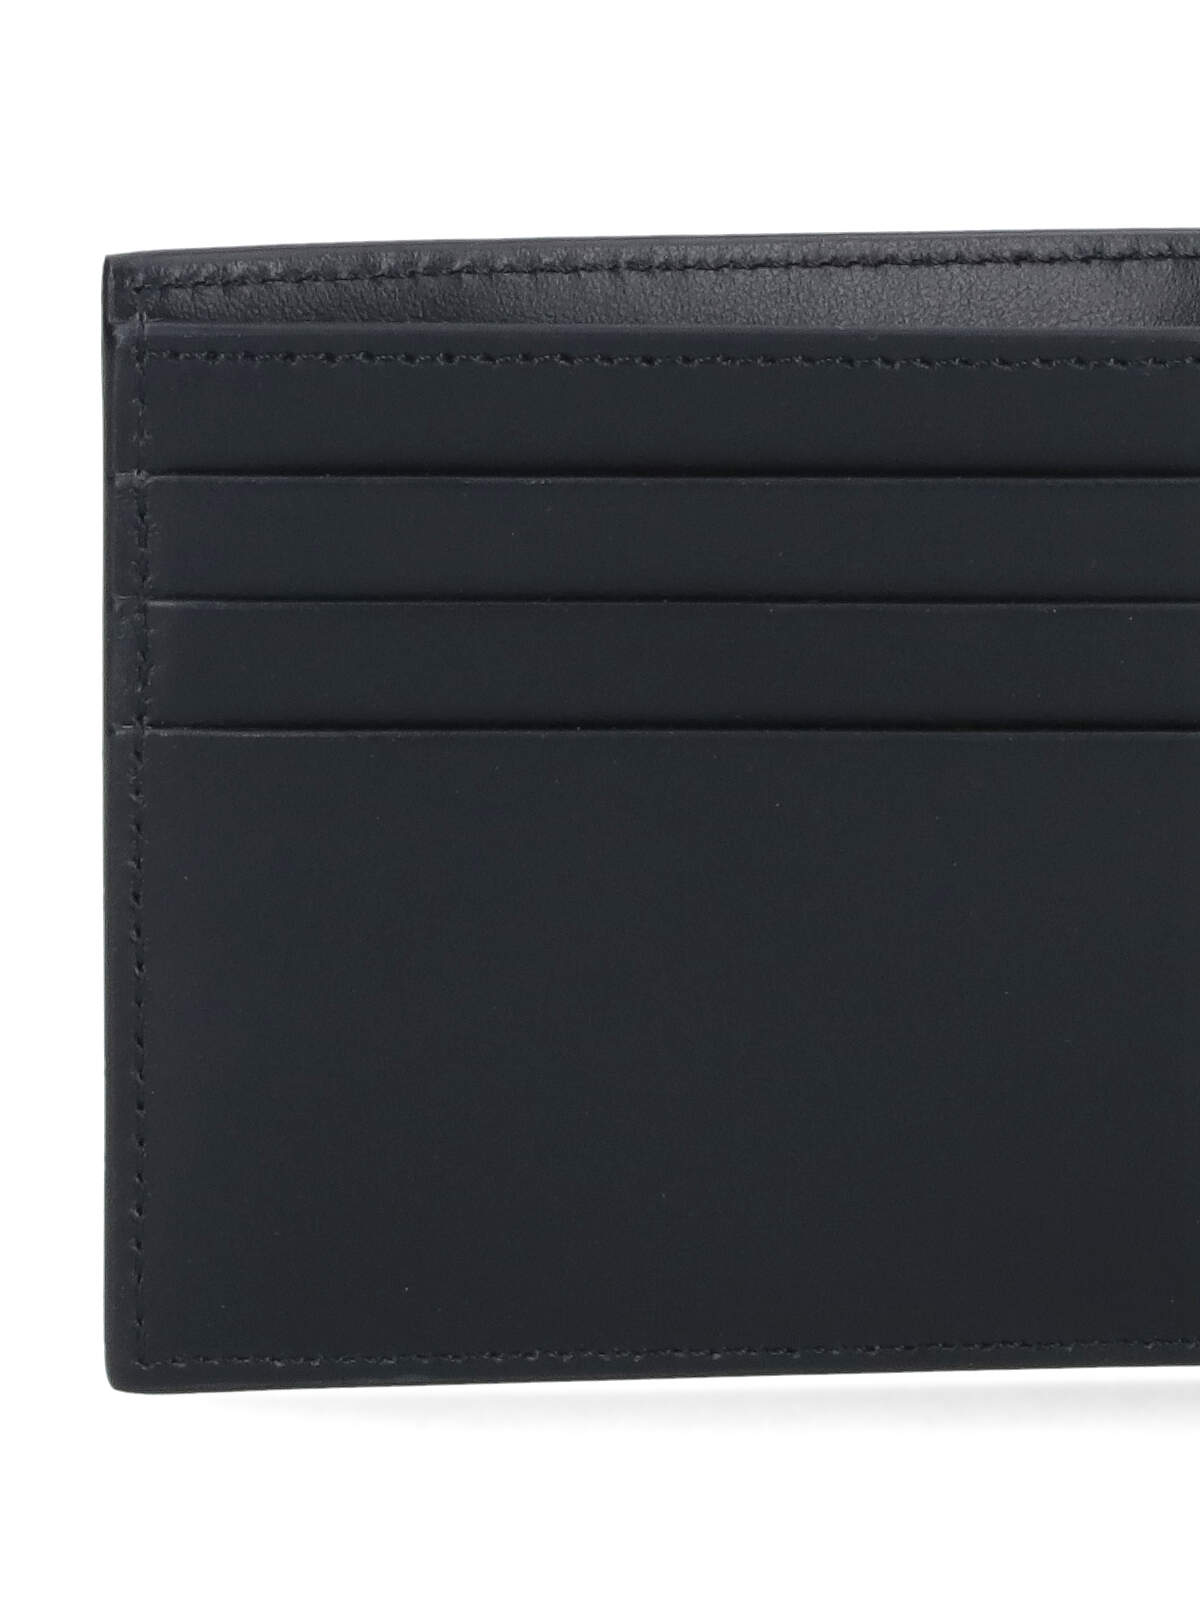 Shop Off-white Bi-fold Wallet In Black